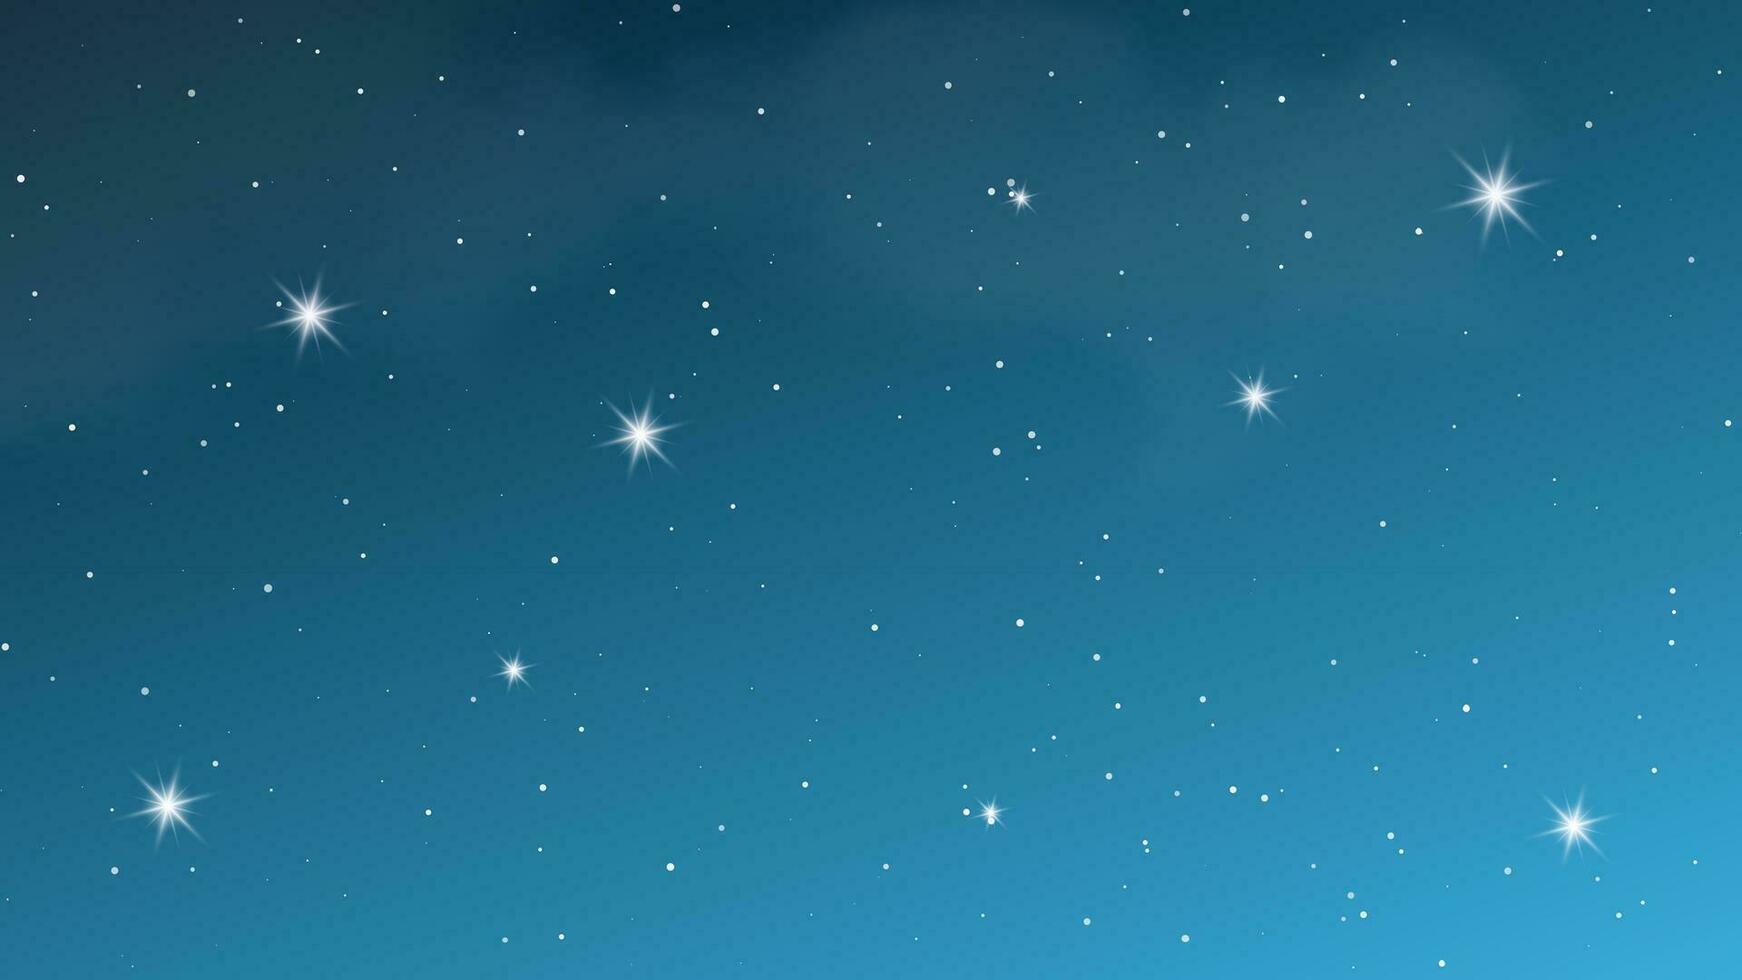 natt himmel med moln och många stjärnor. abstrakt natur bakgrund med stardust i djup universum. vektor illustration.